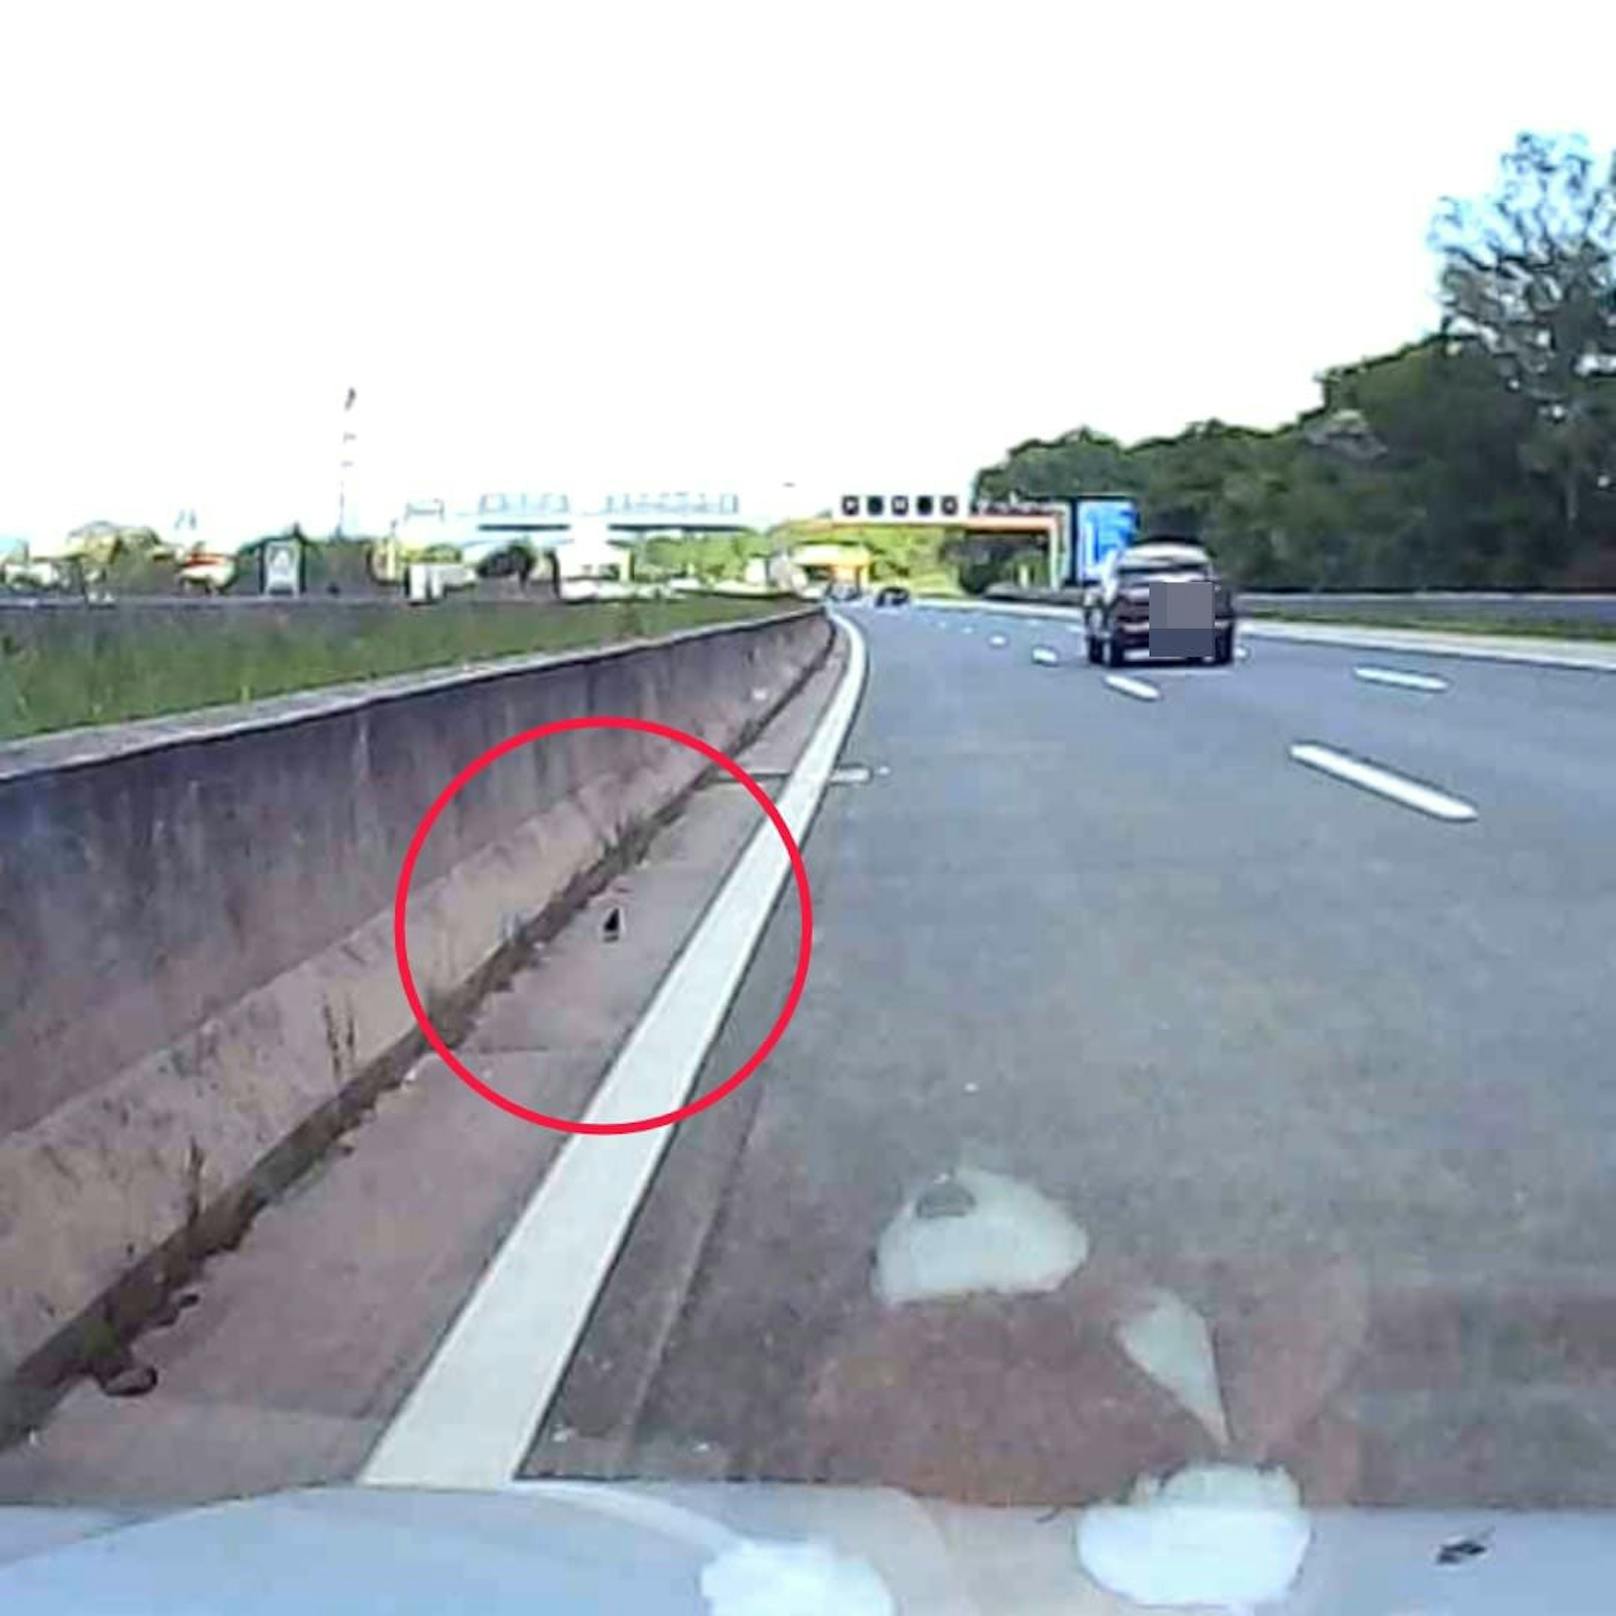 Hier sieht man das kleine Wollknäuel auf der Autobahn.